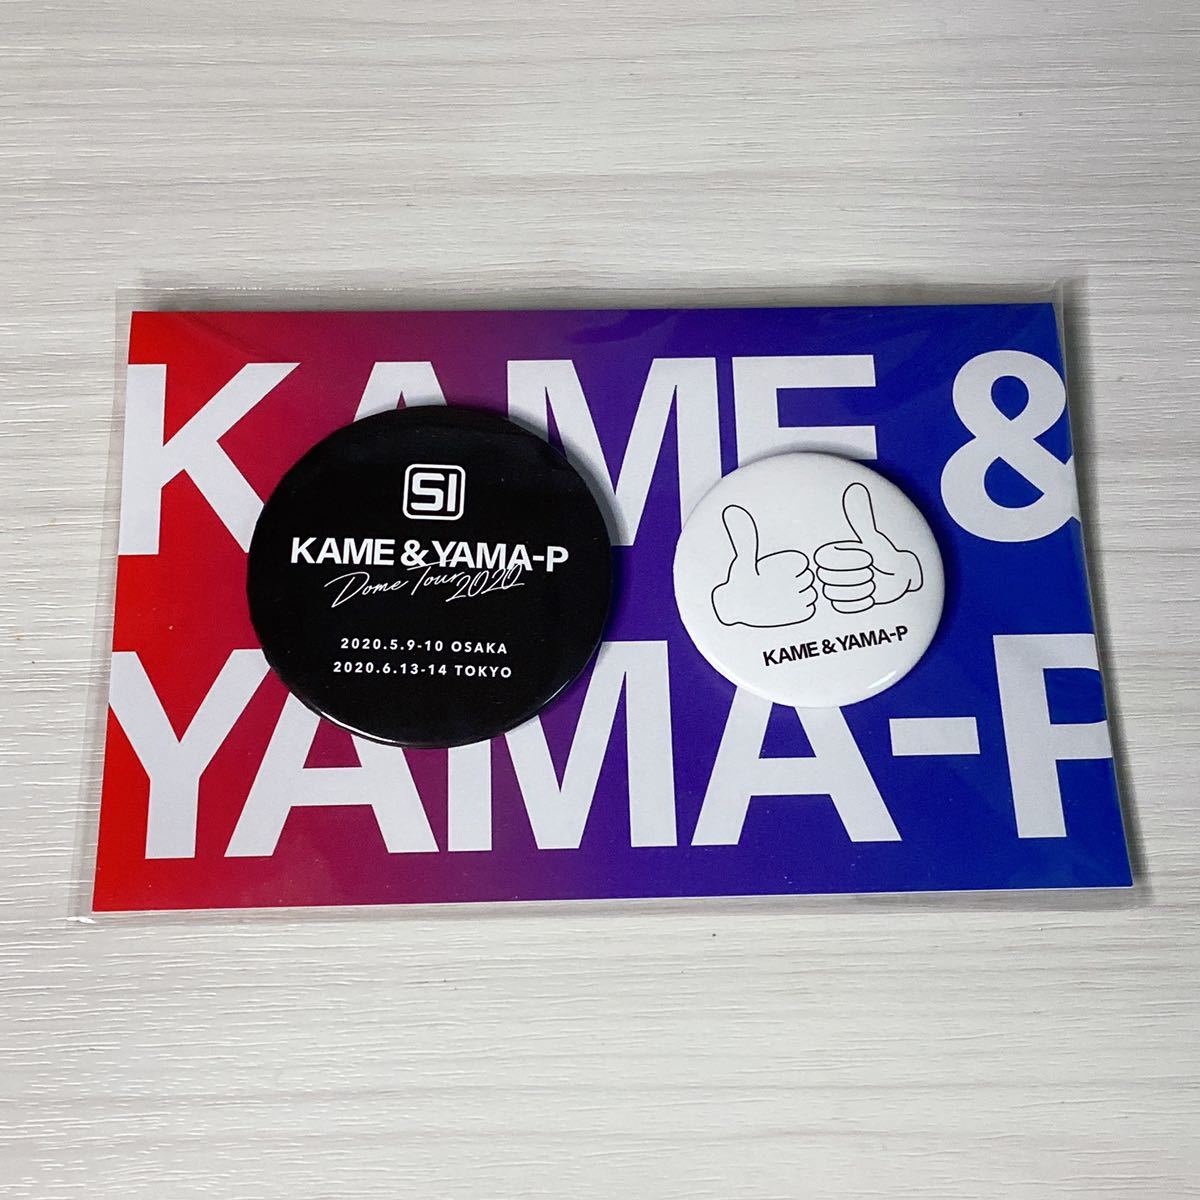 亀と山P 缶バッチセット KAME & YAMA-P DOME TOUR 2020 SI 未開封 亀梨和也 山下智久